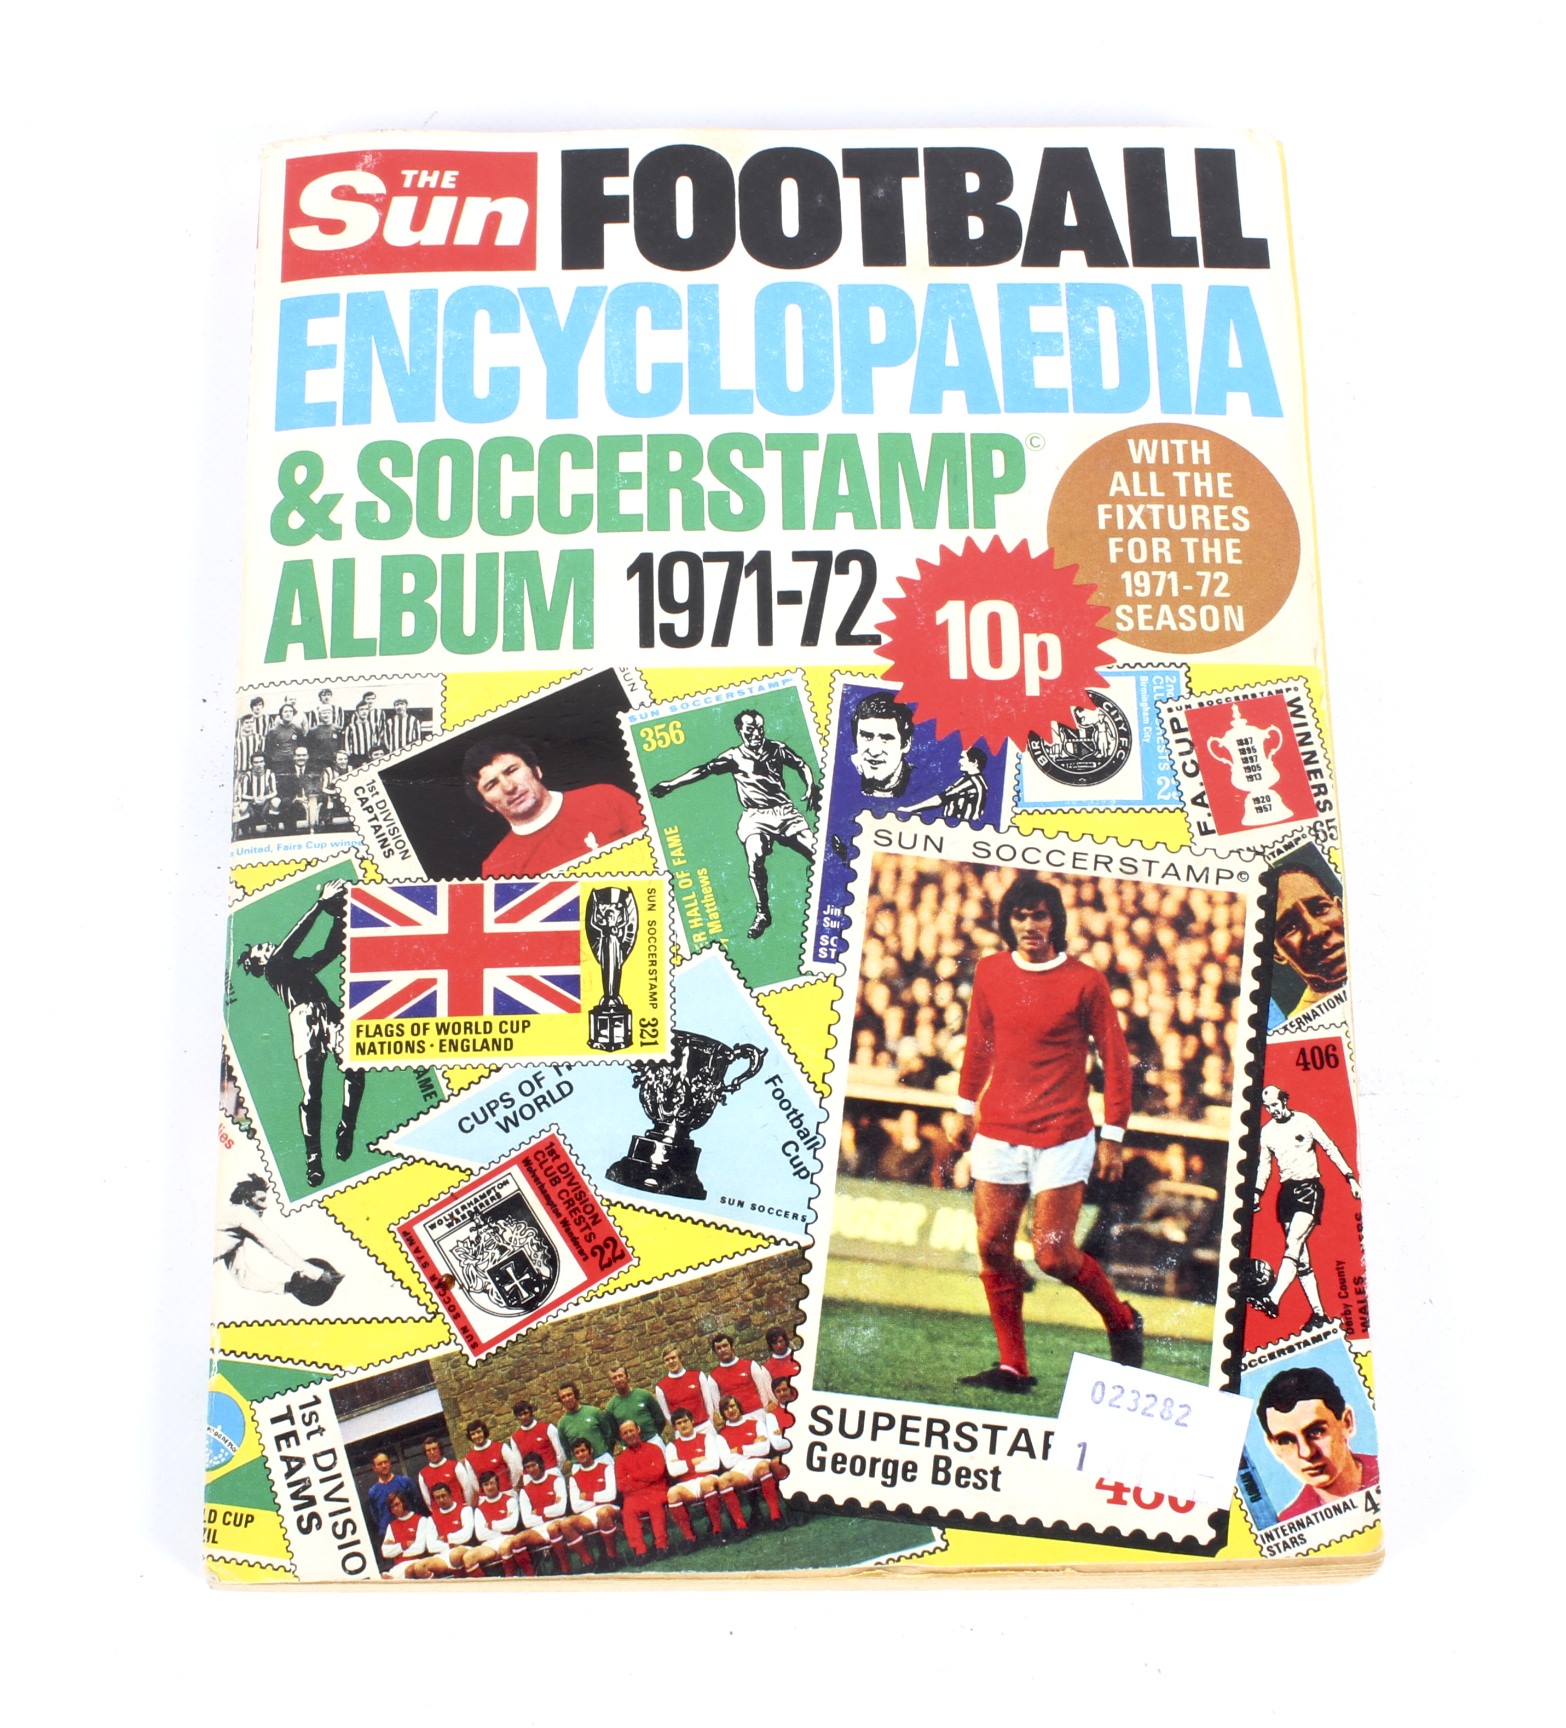 A 'Football Encyclopedia & Soccerstamp A